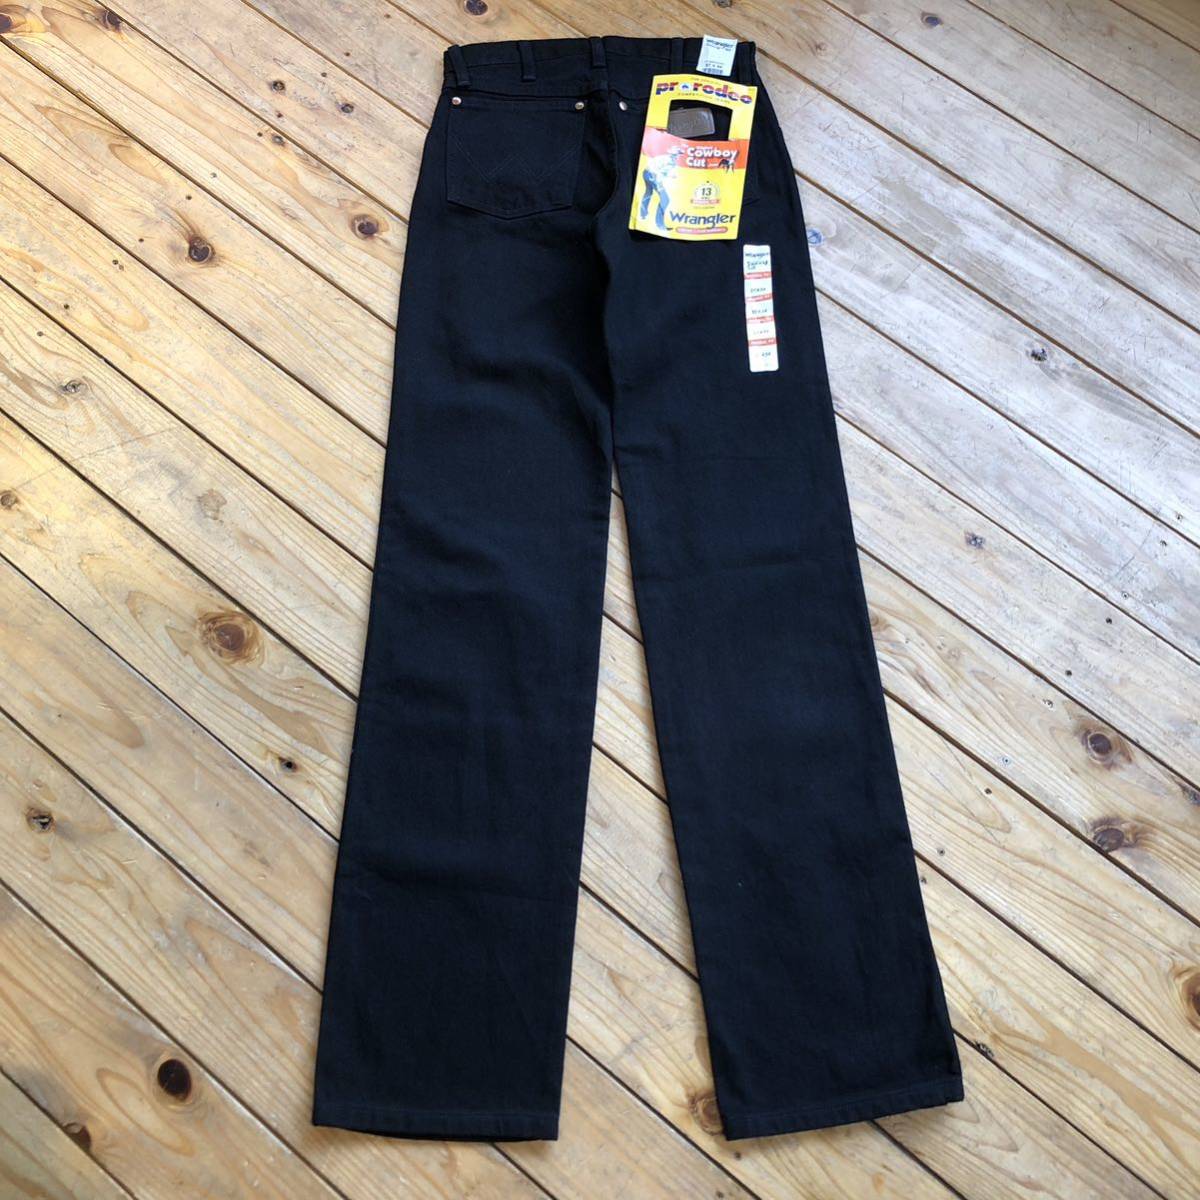  новый товар неиспользуемый товар Wrangler Wrangler Denim брюки мужской W27 L34kaubo- ikatto Rodeo черный с биркой не использовался товар P0761